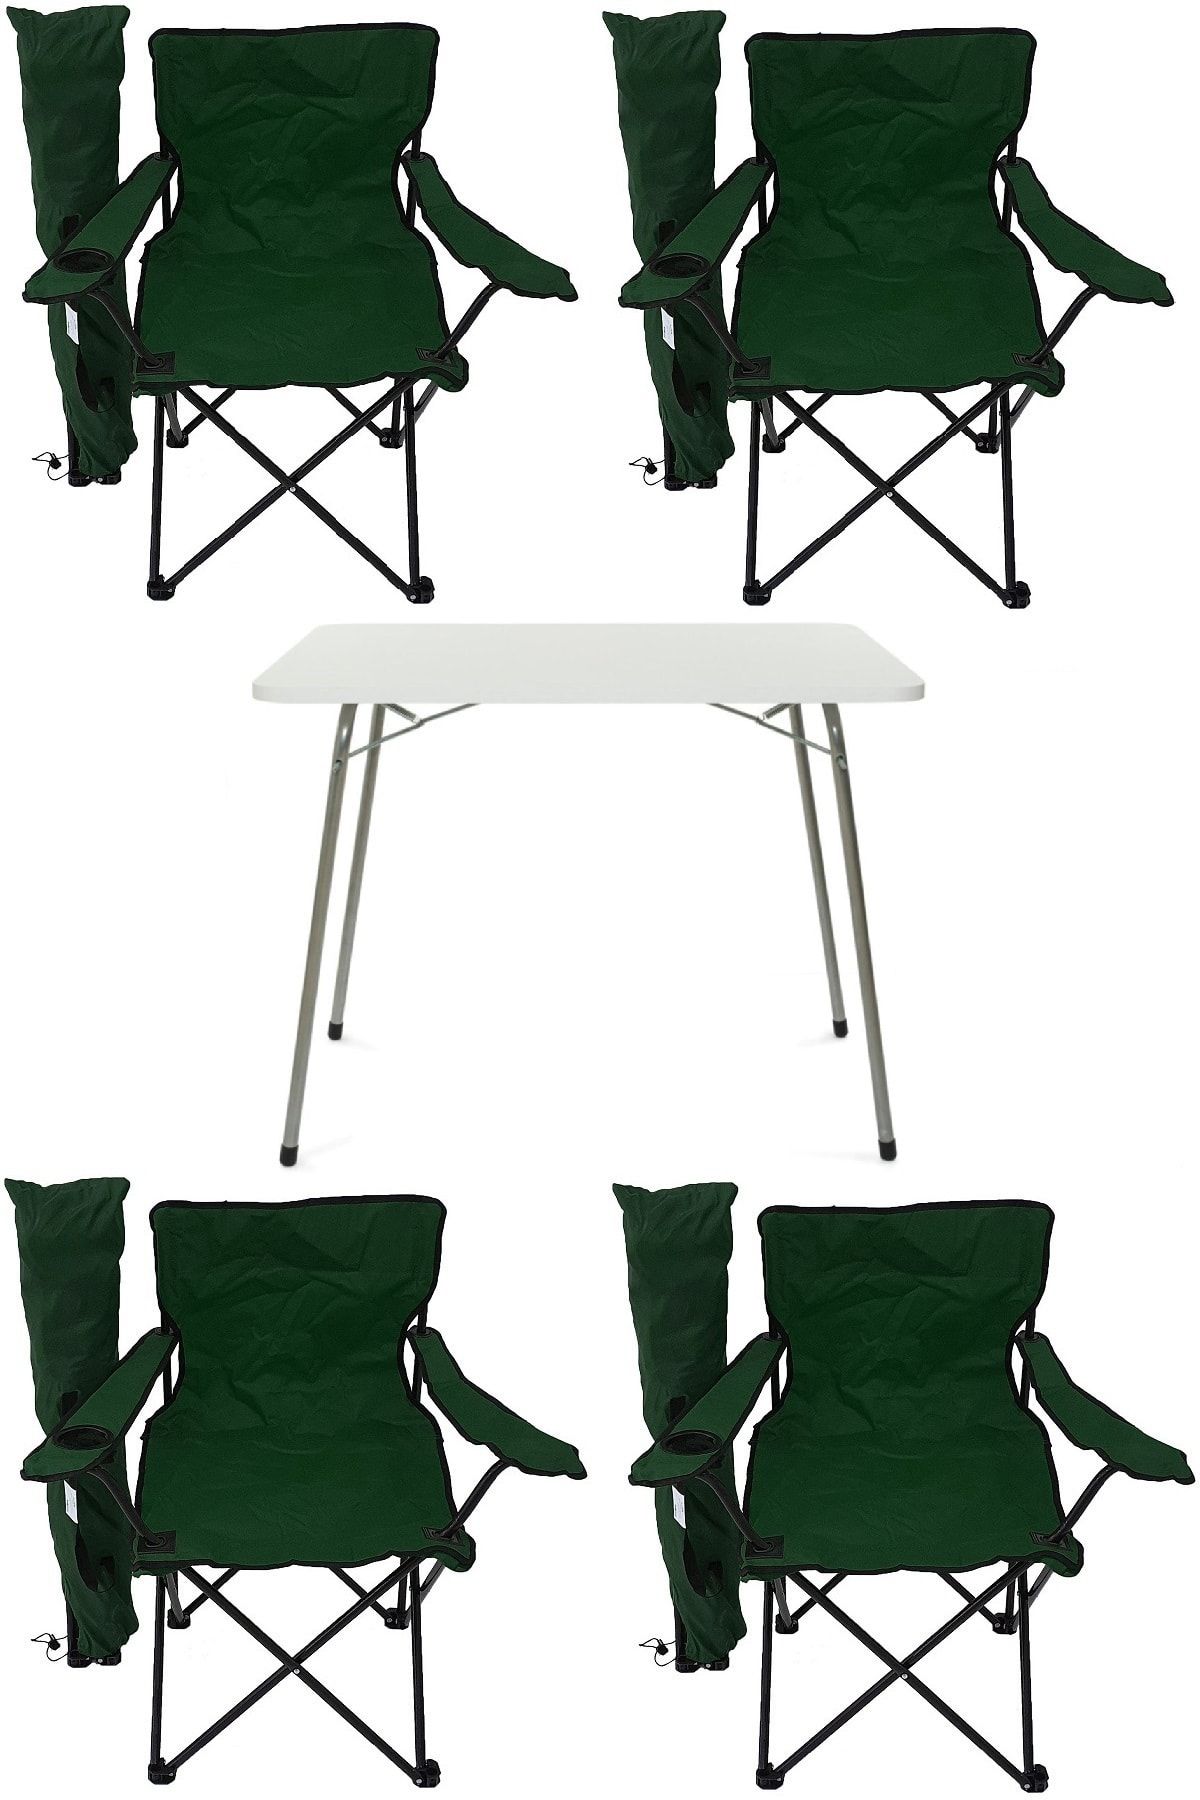 Bofigo Katlanır Masa + 4 Adet Kamp Sandalyesi Yeşil